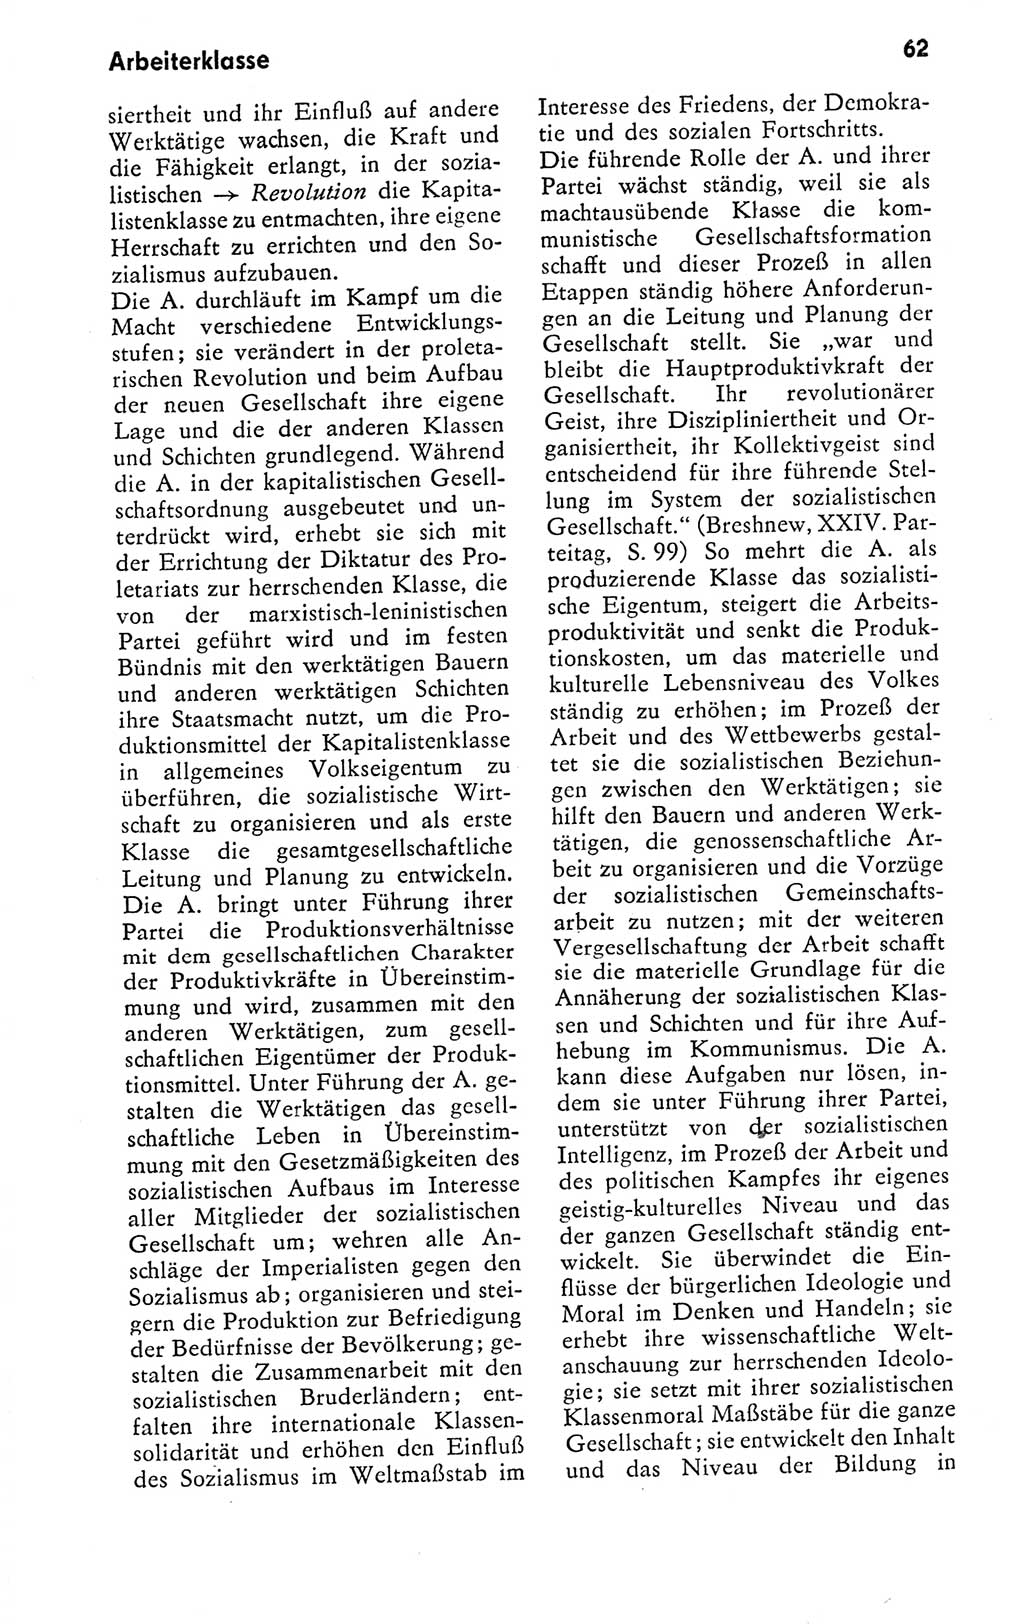 Kleines politisches Wörterbuch [Deutsche Demokratische Republik (DDR)] 1978, Seite 62 (Kl. pol. Wb. DDR 1978, S. 62)